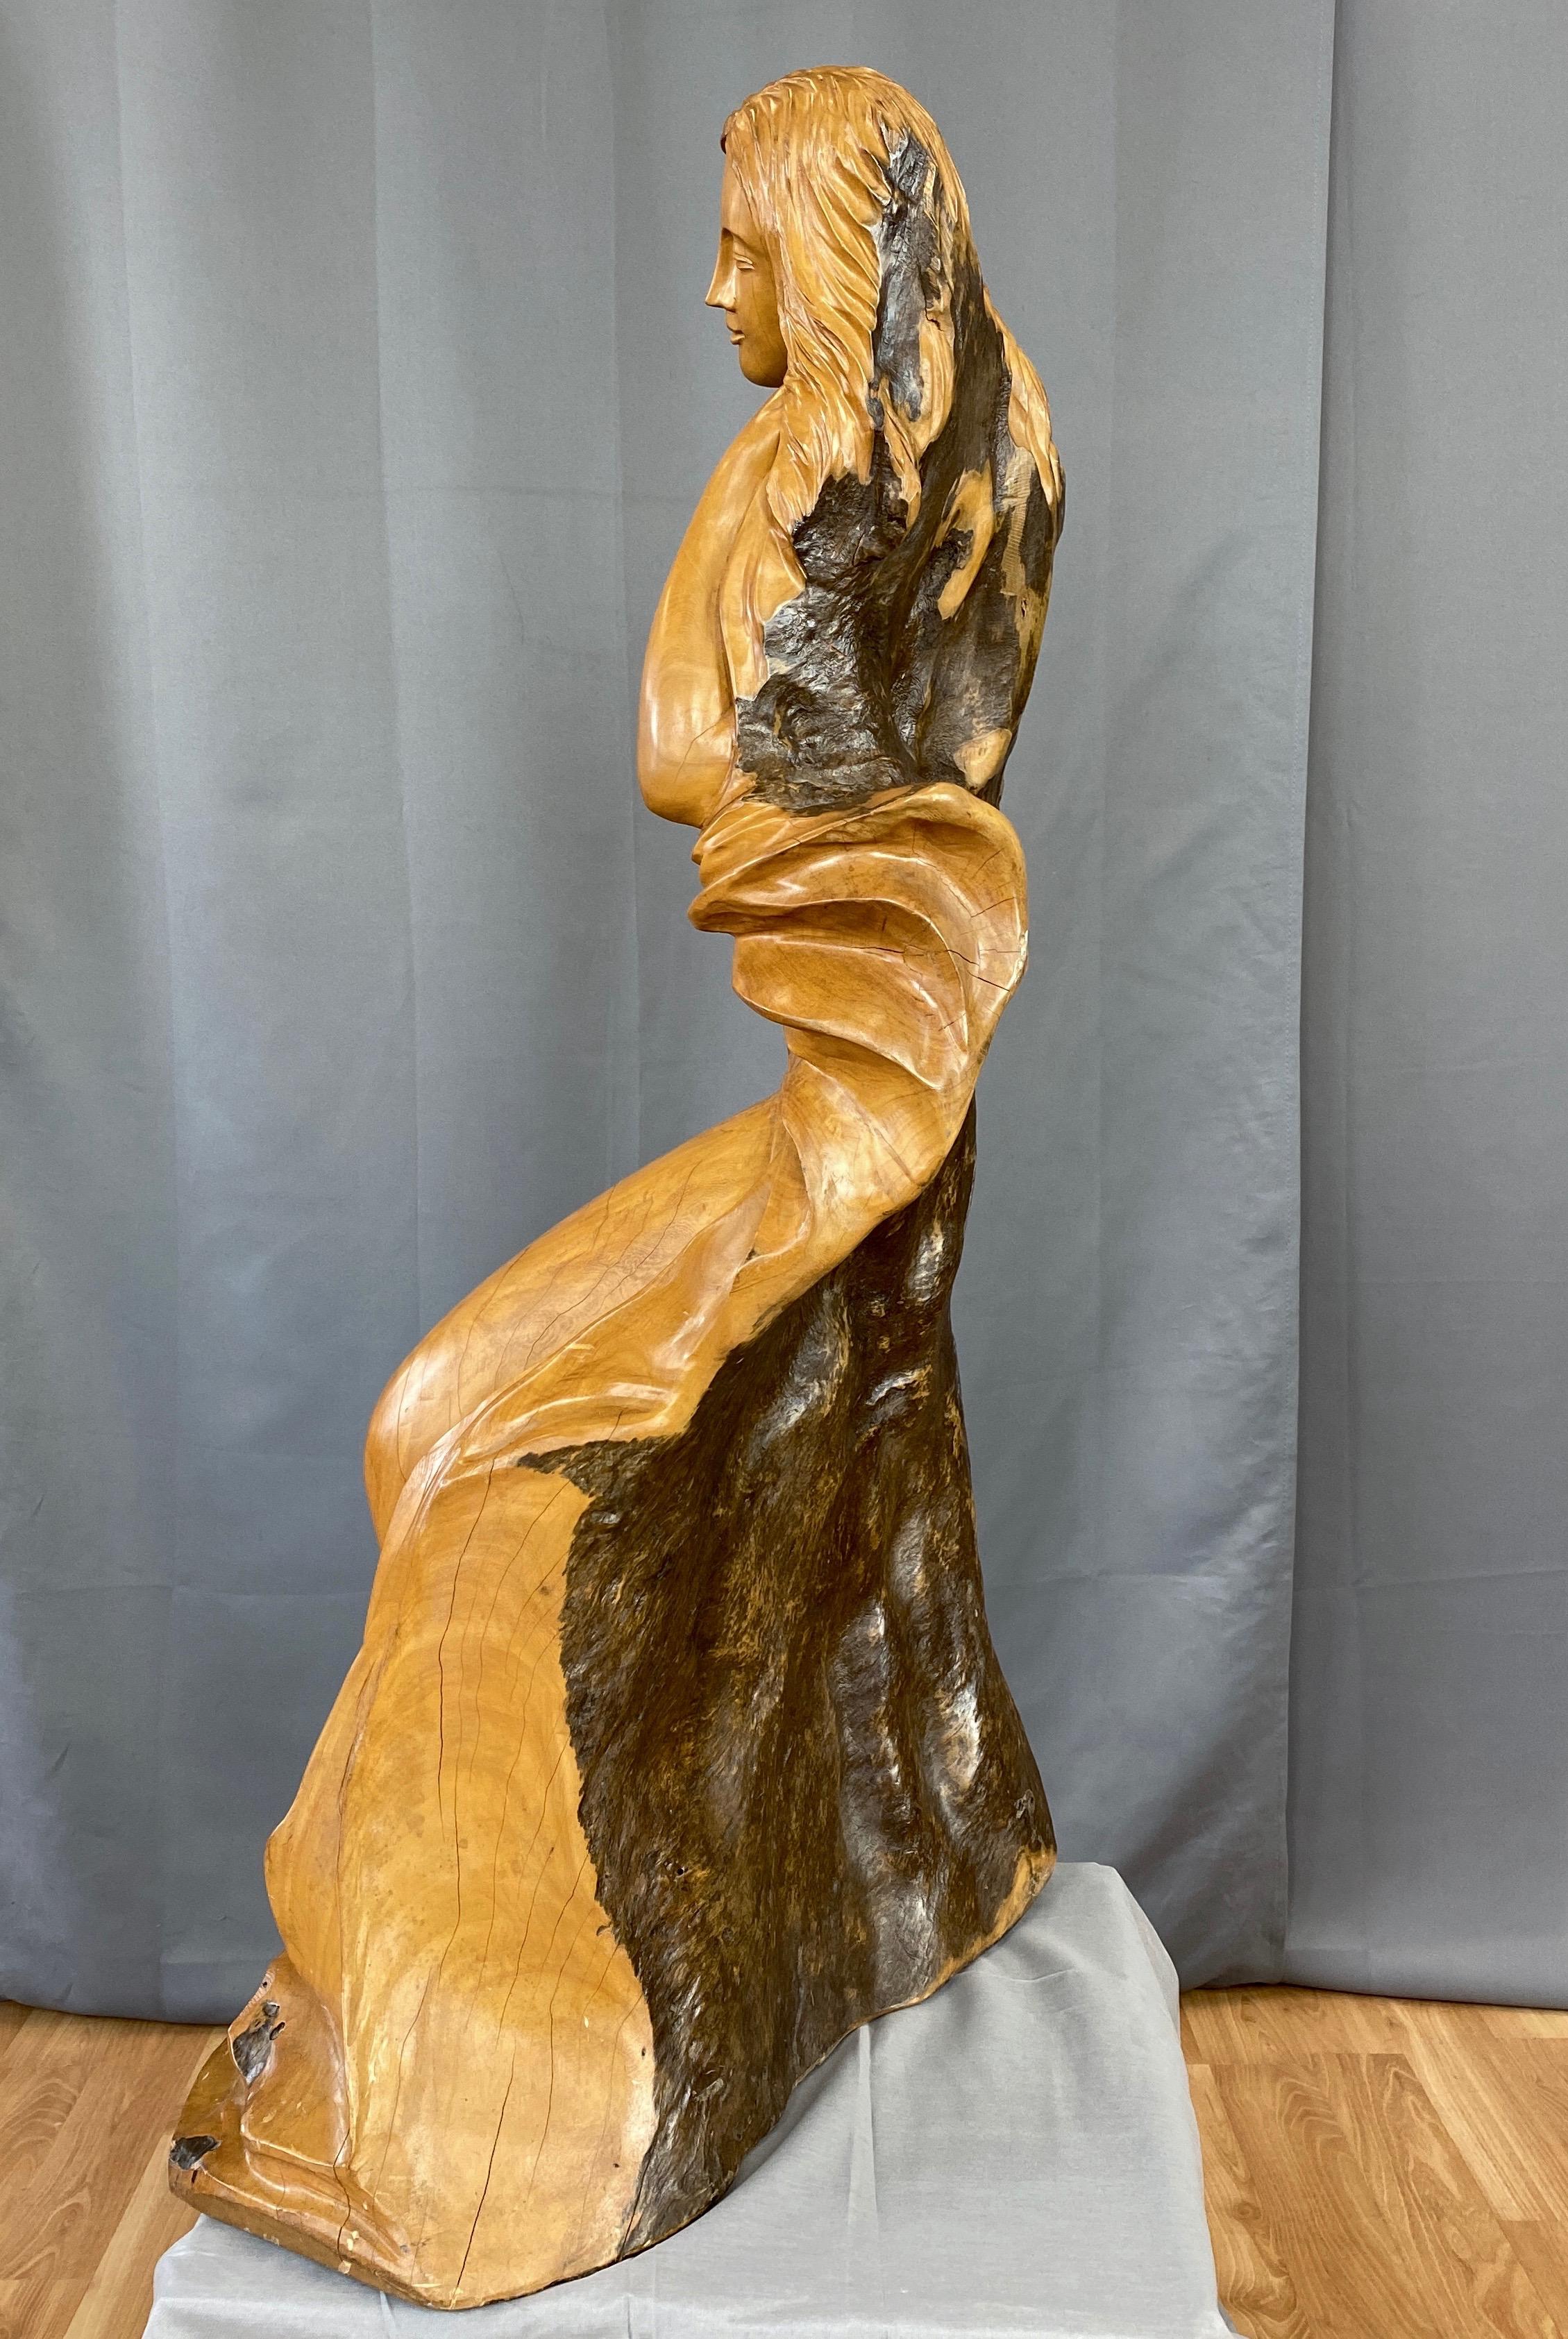 Folk Art Large Hand-Carved Cypress Knee Figural Sculpture After Botticelli's Venus, 1970s For Sale